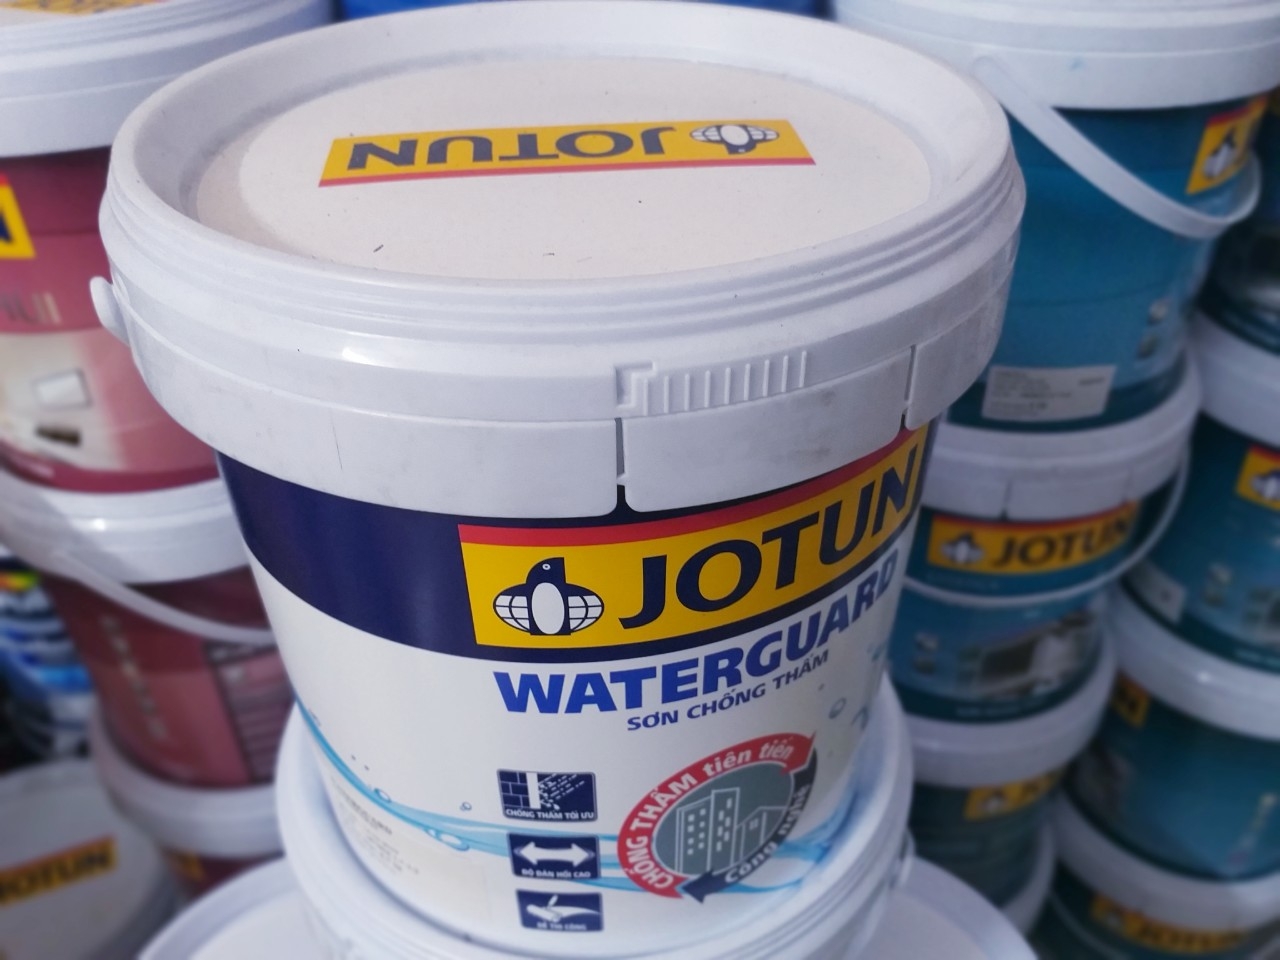 Với sơn chống thấm Jotun Waterguard, bạn có thể yên tâm bảo vệ ngôi nhà của mình khỏi sự xâm nhập của nước mưa và độ ẩm. Hãy xem hình ảnh để khám phá những đặc tính tuyệt vời của sản phẩm này.